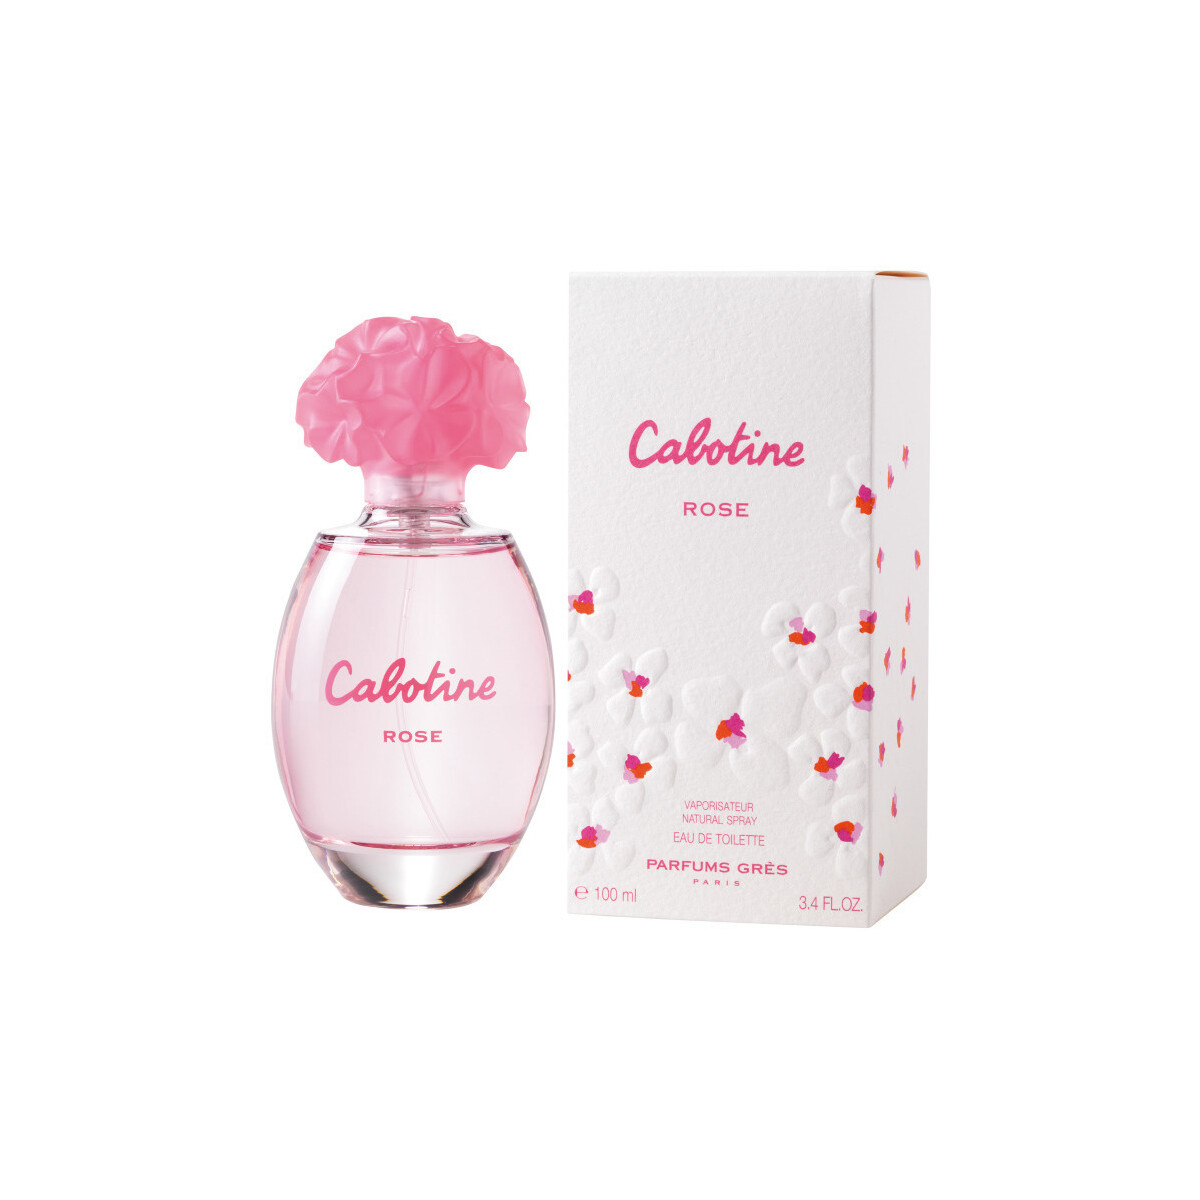 beleza Mulher Colónia Gres Cabotine Rose - colônia - 100ml - vaporizador Cabotine Rose - cologne - 100ml - spray